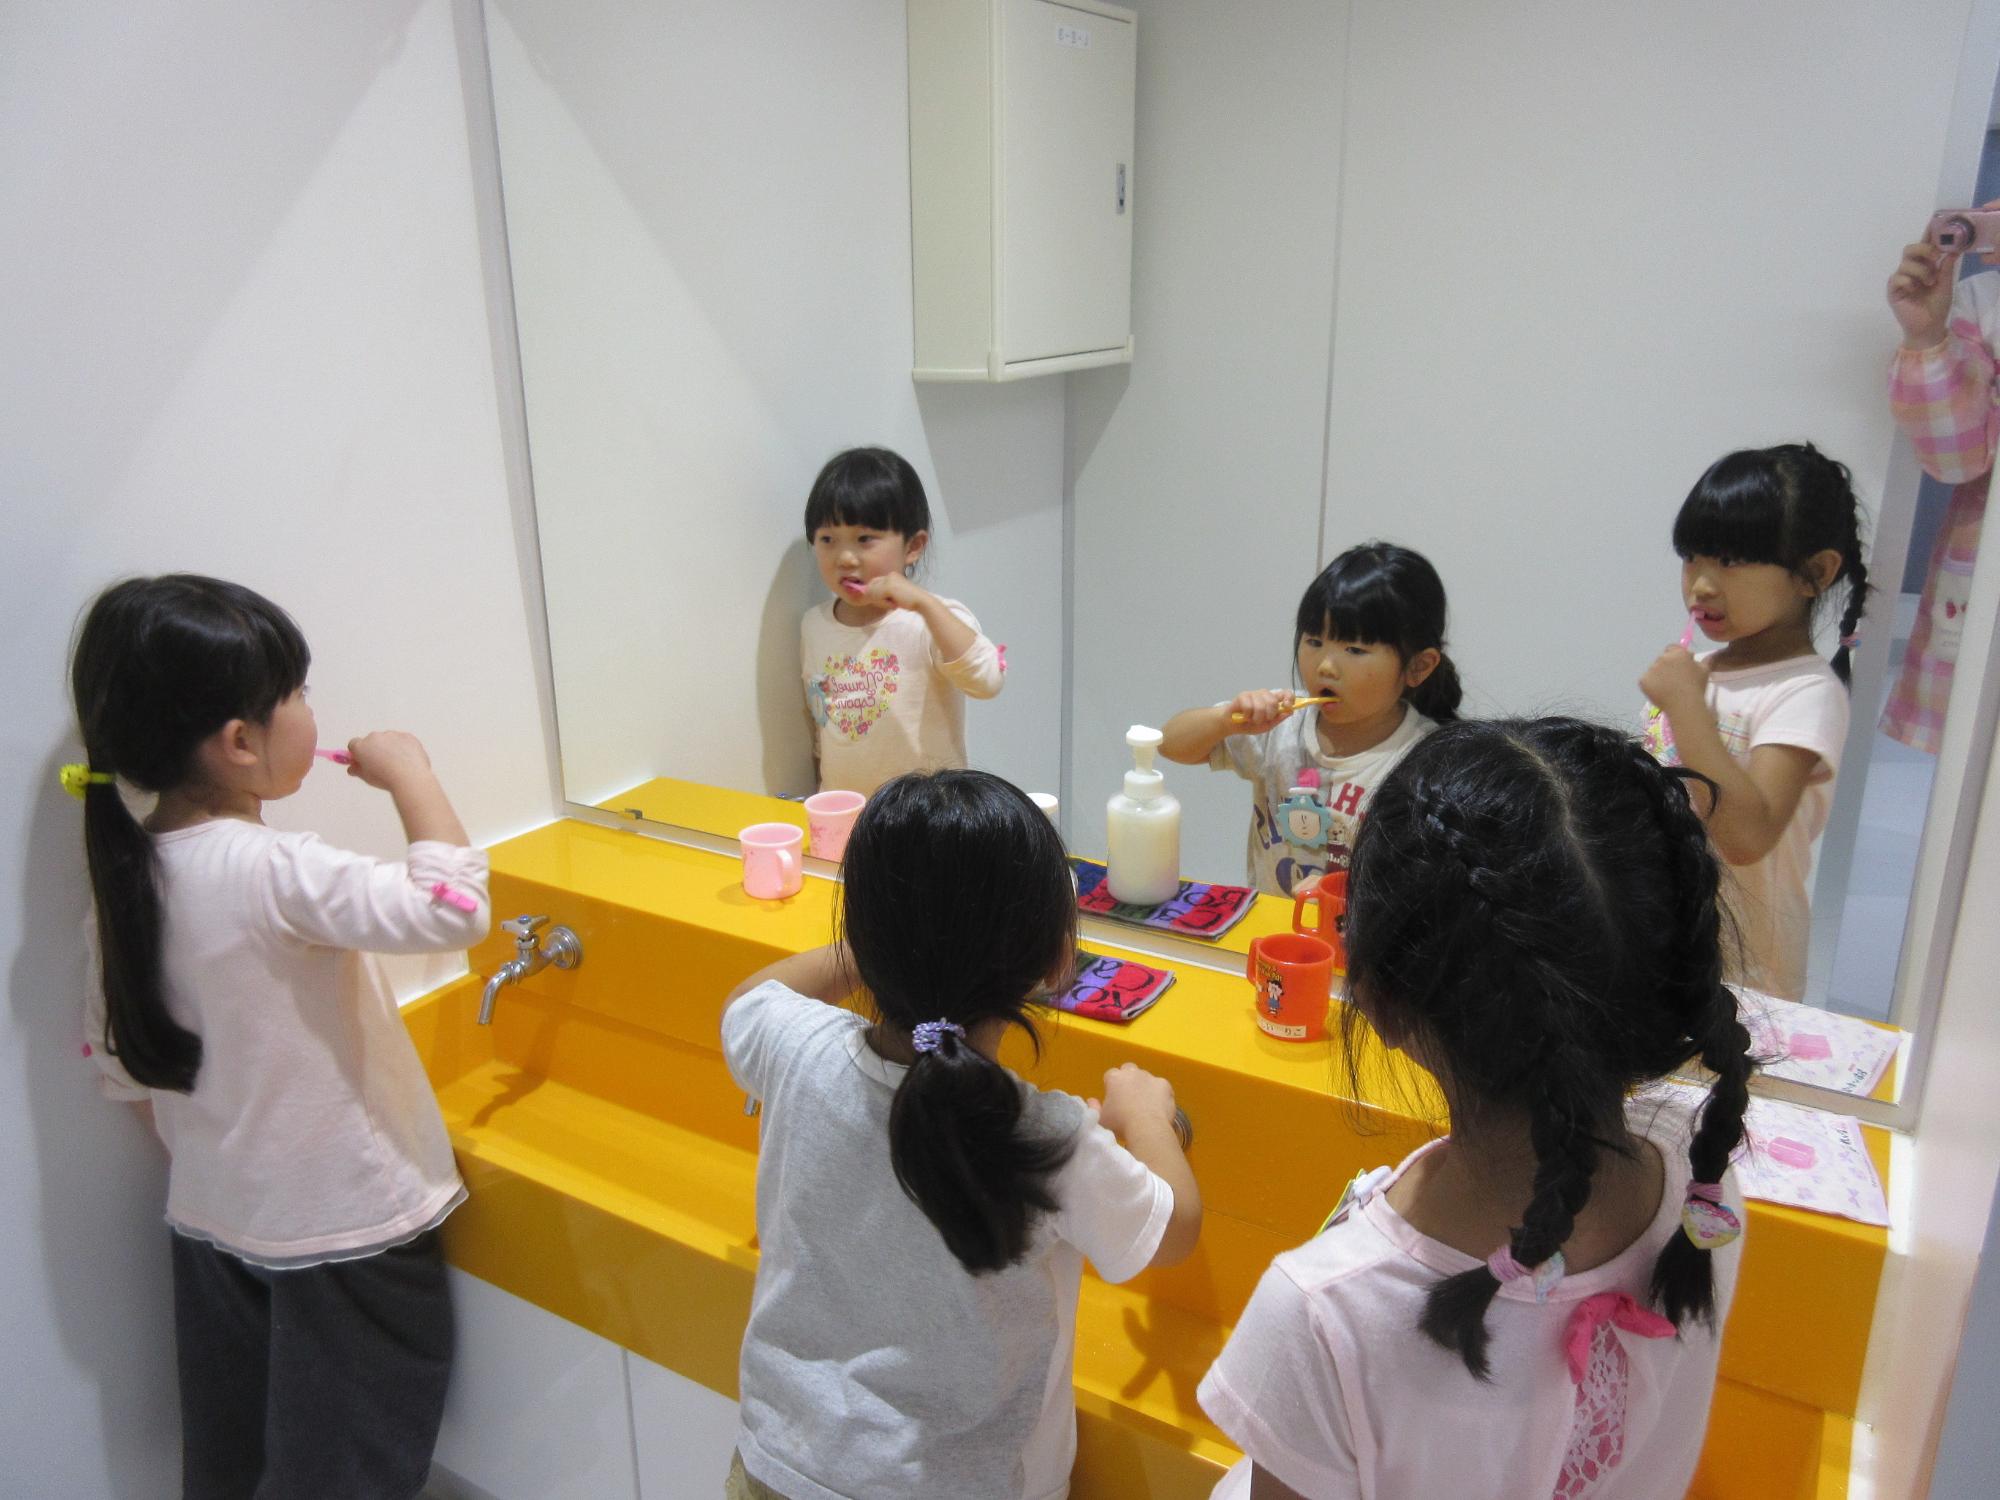 洗面台の鏡の前で園児たちが歯磨きをしている写真